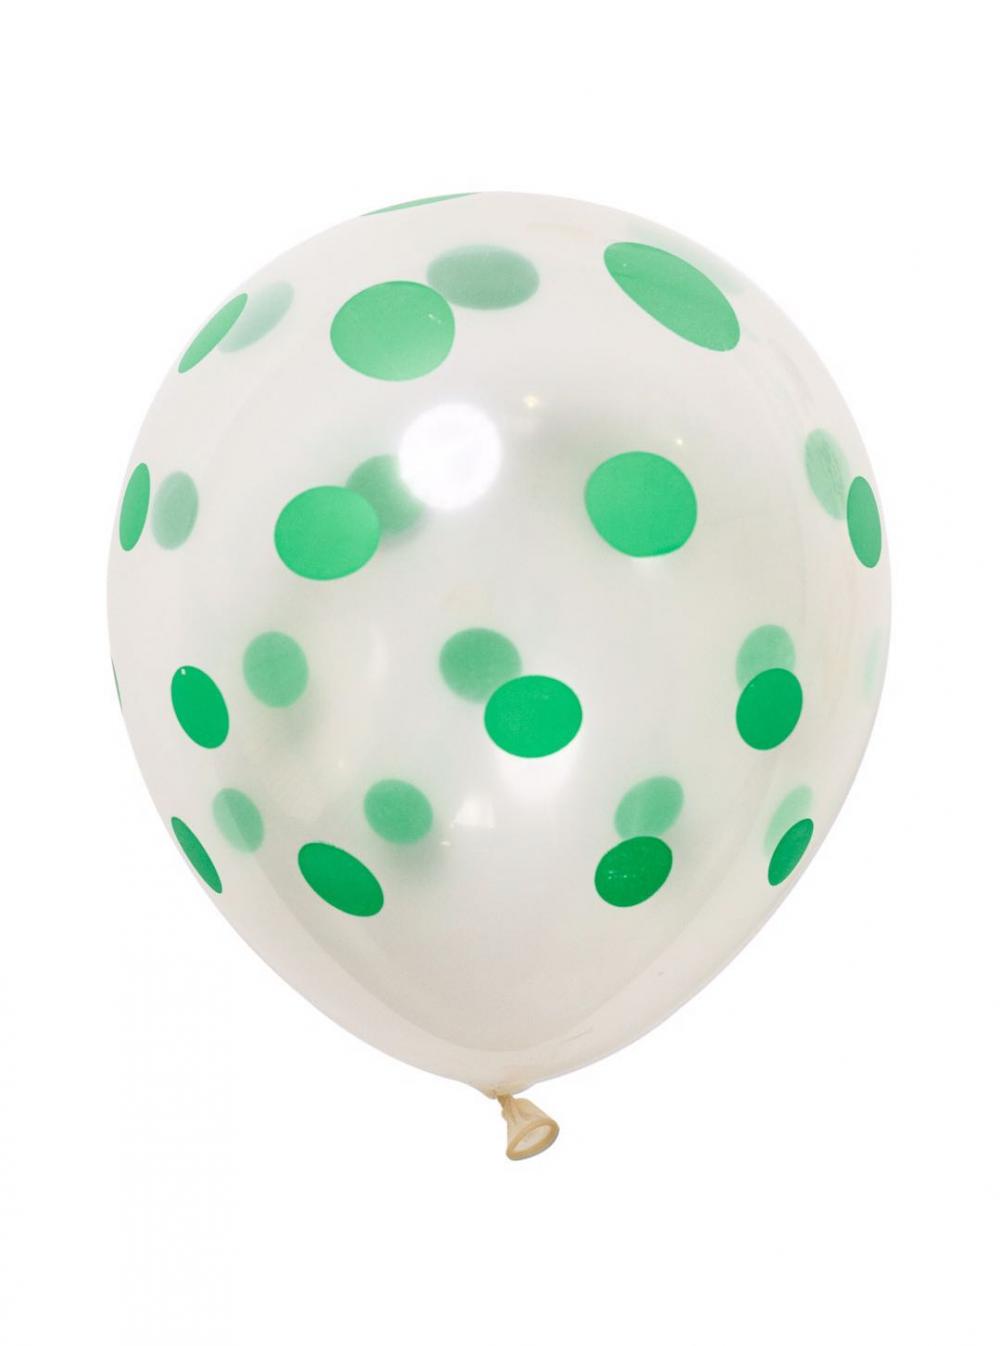 12 Inch Standard Polka Dot Balloons Clear Balloon Green Dot (10PCS)